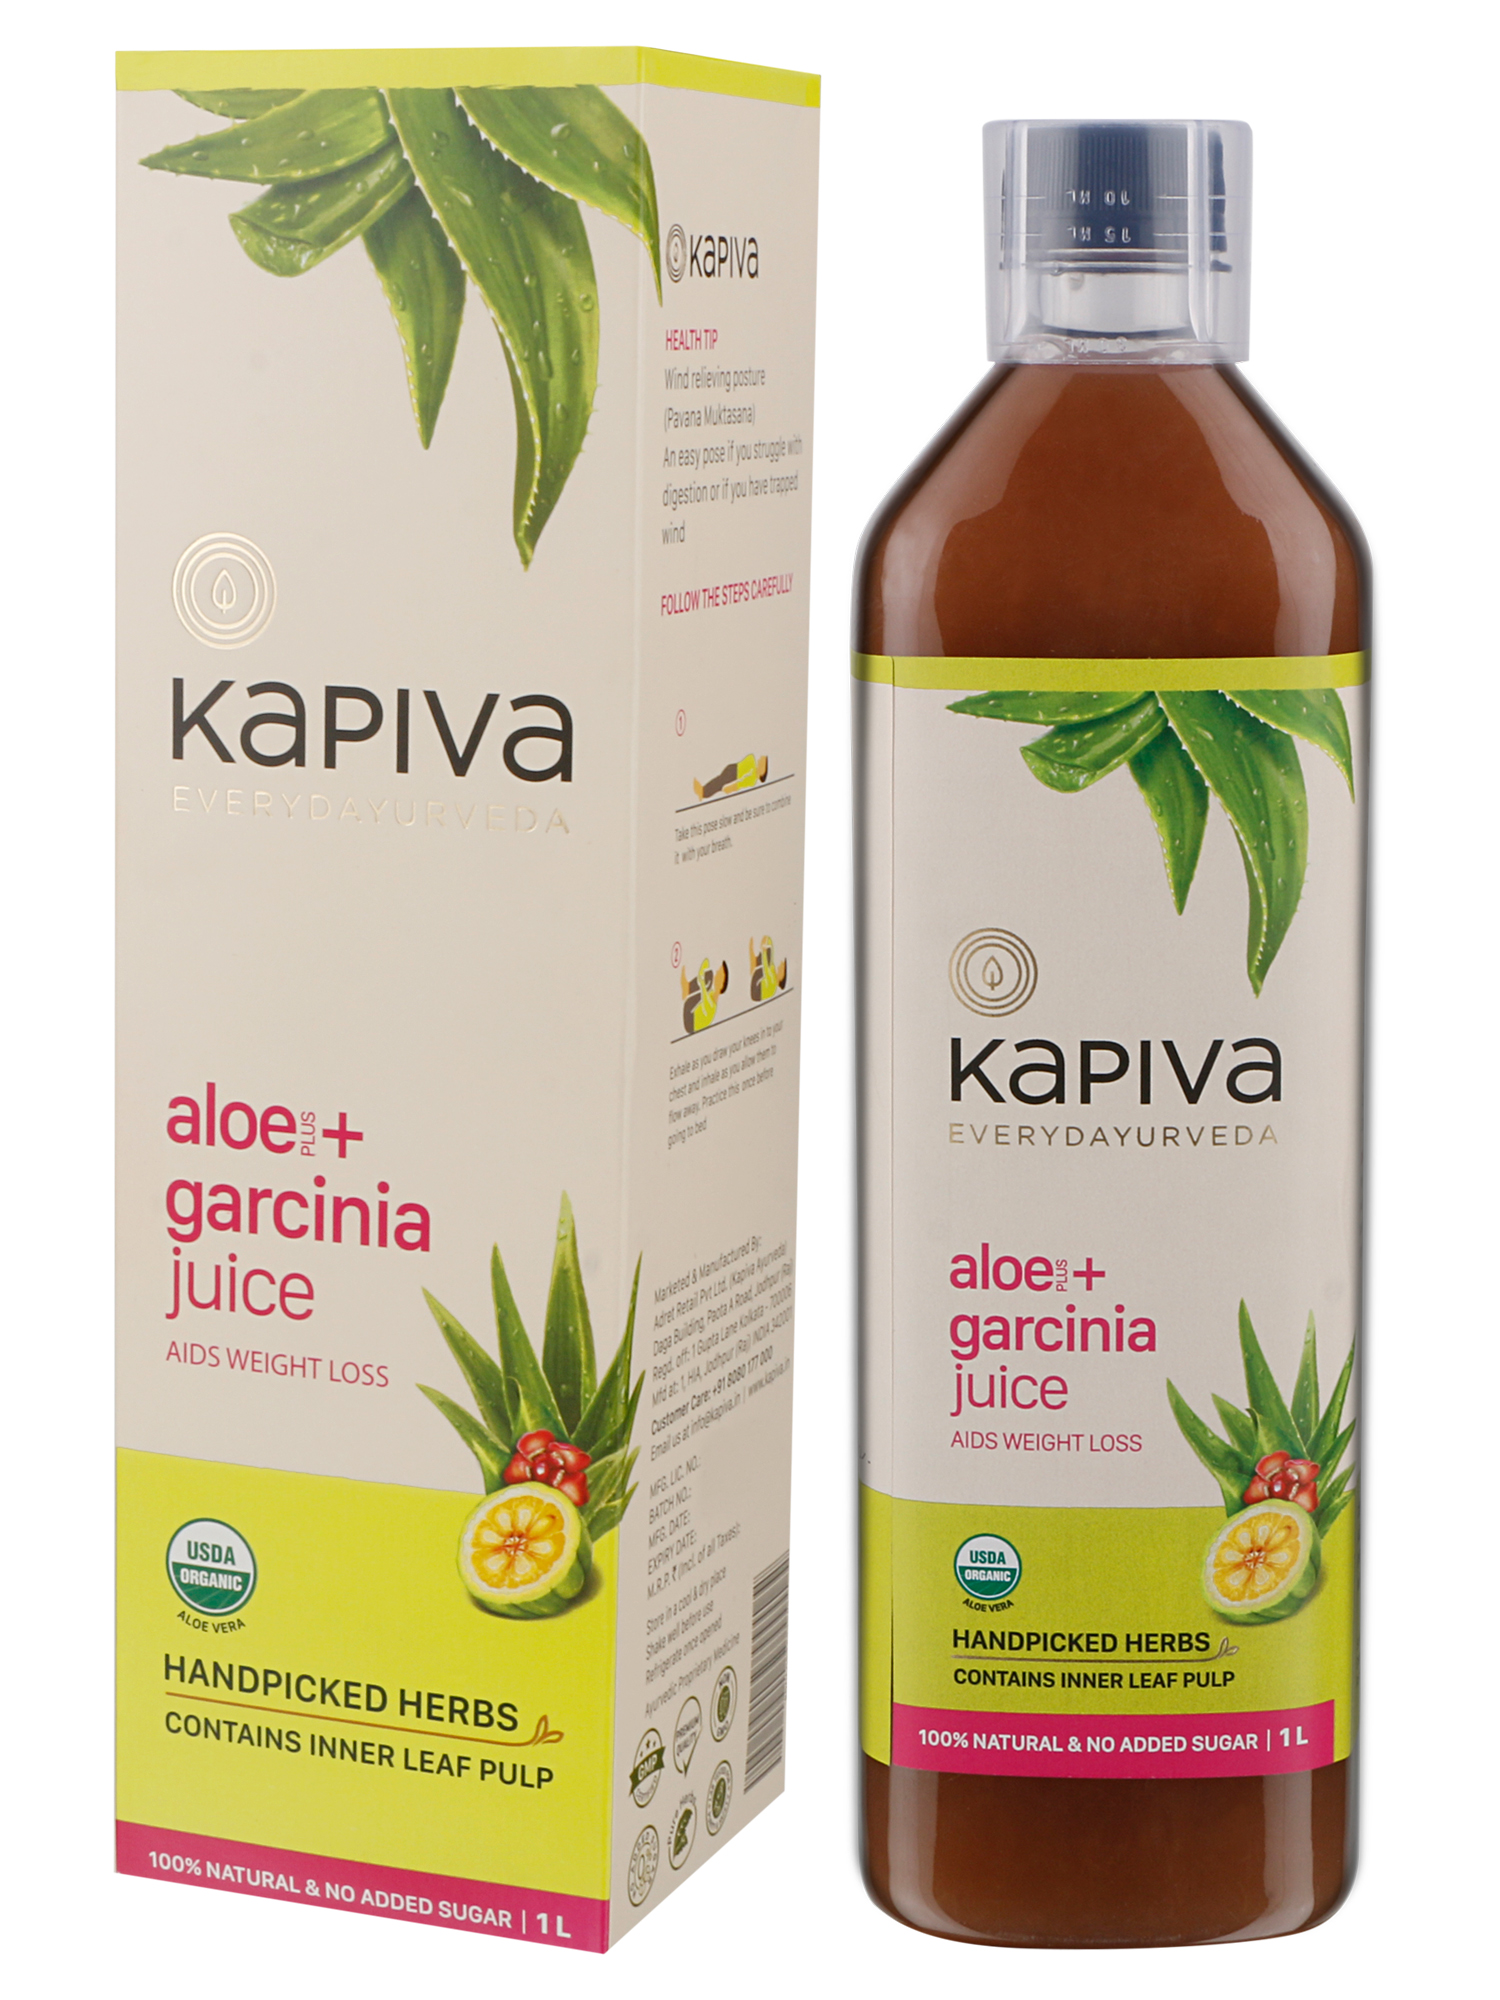 Buy Kapiva Aloe + Garcinia Juice at Best Price Online